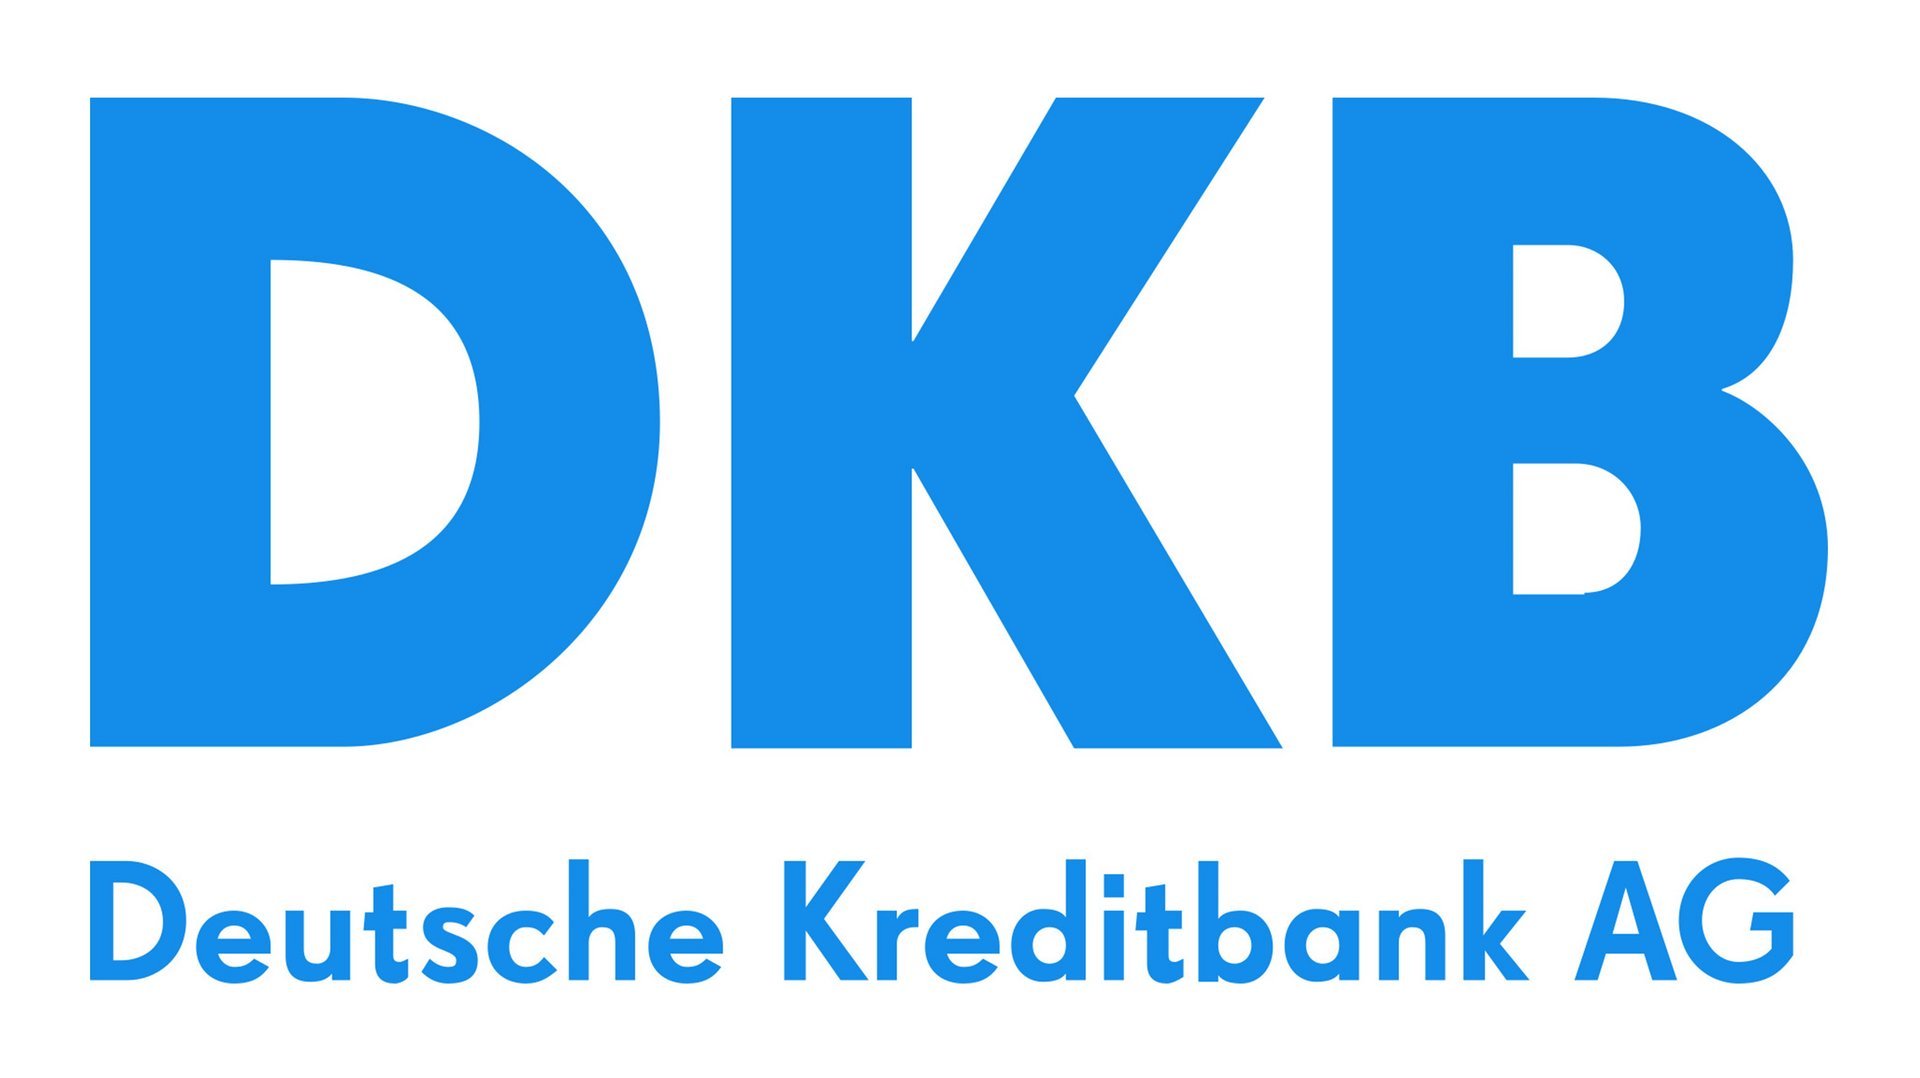 Deutsche Kreditbank AG Logo DKB